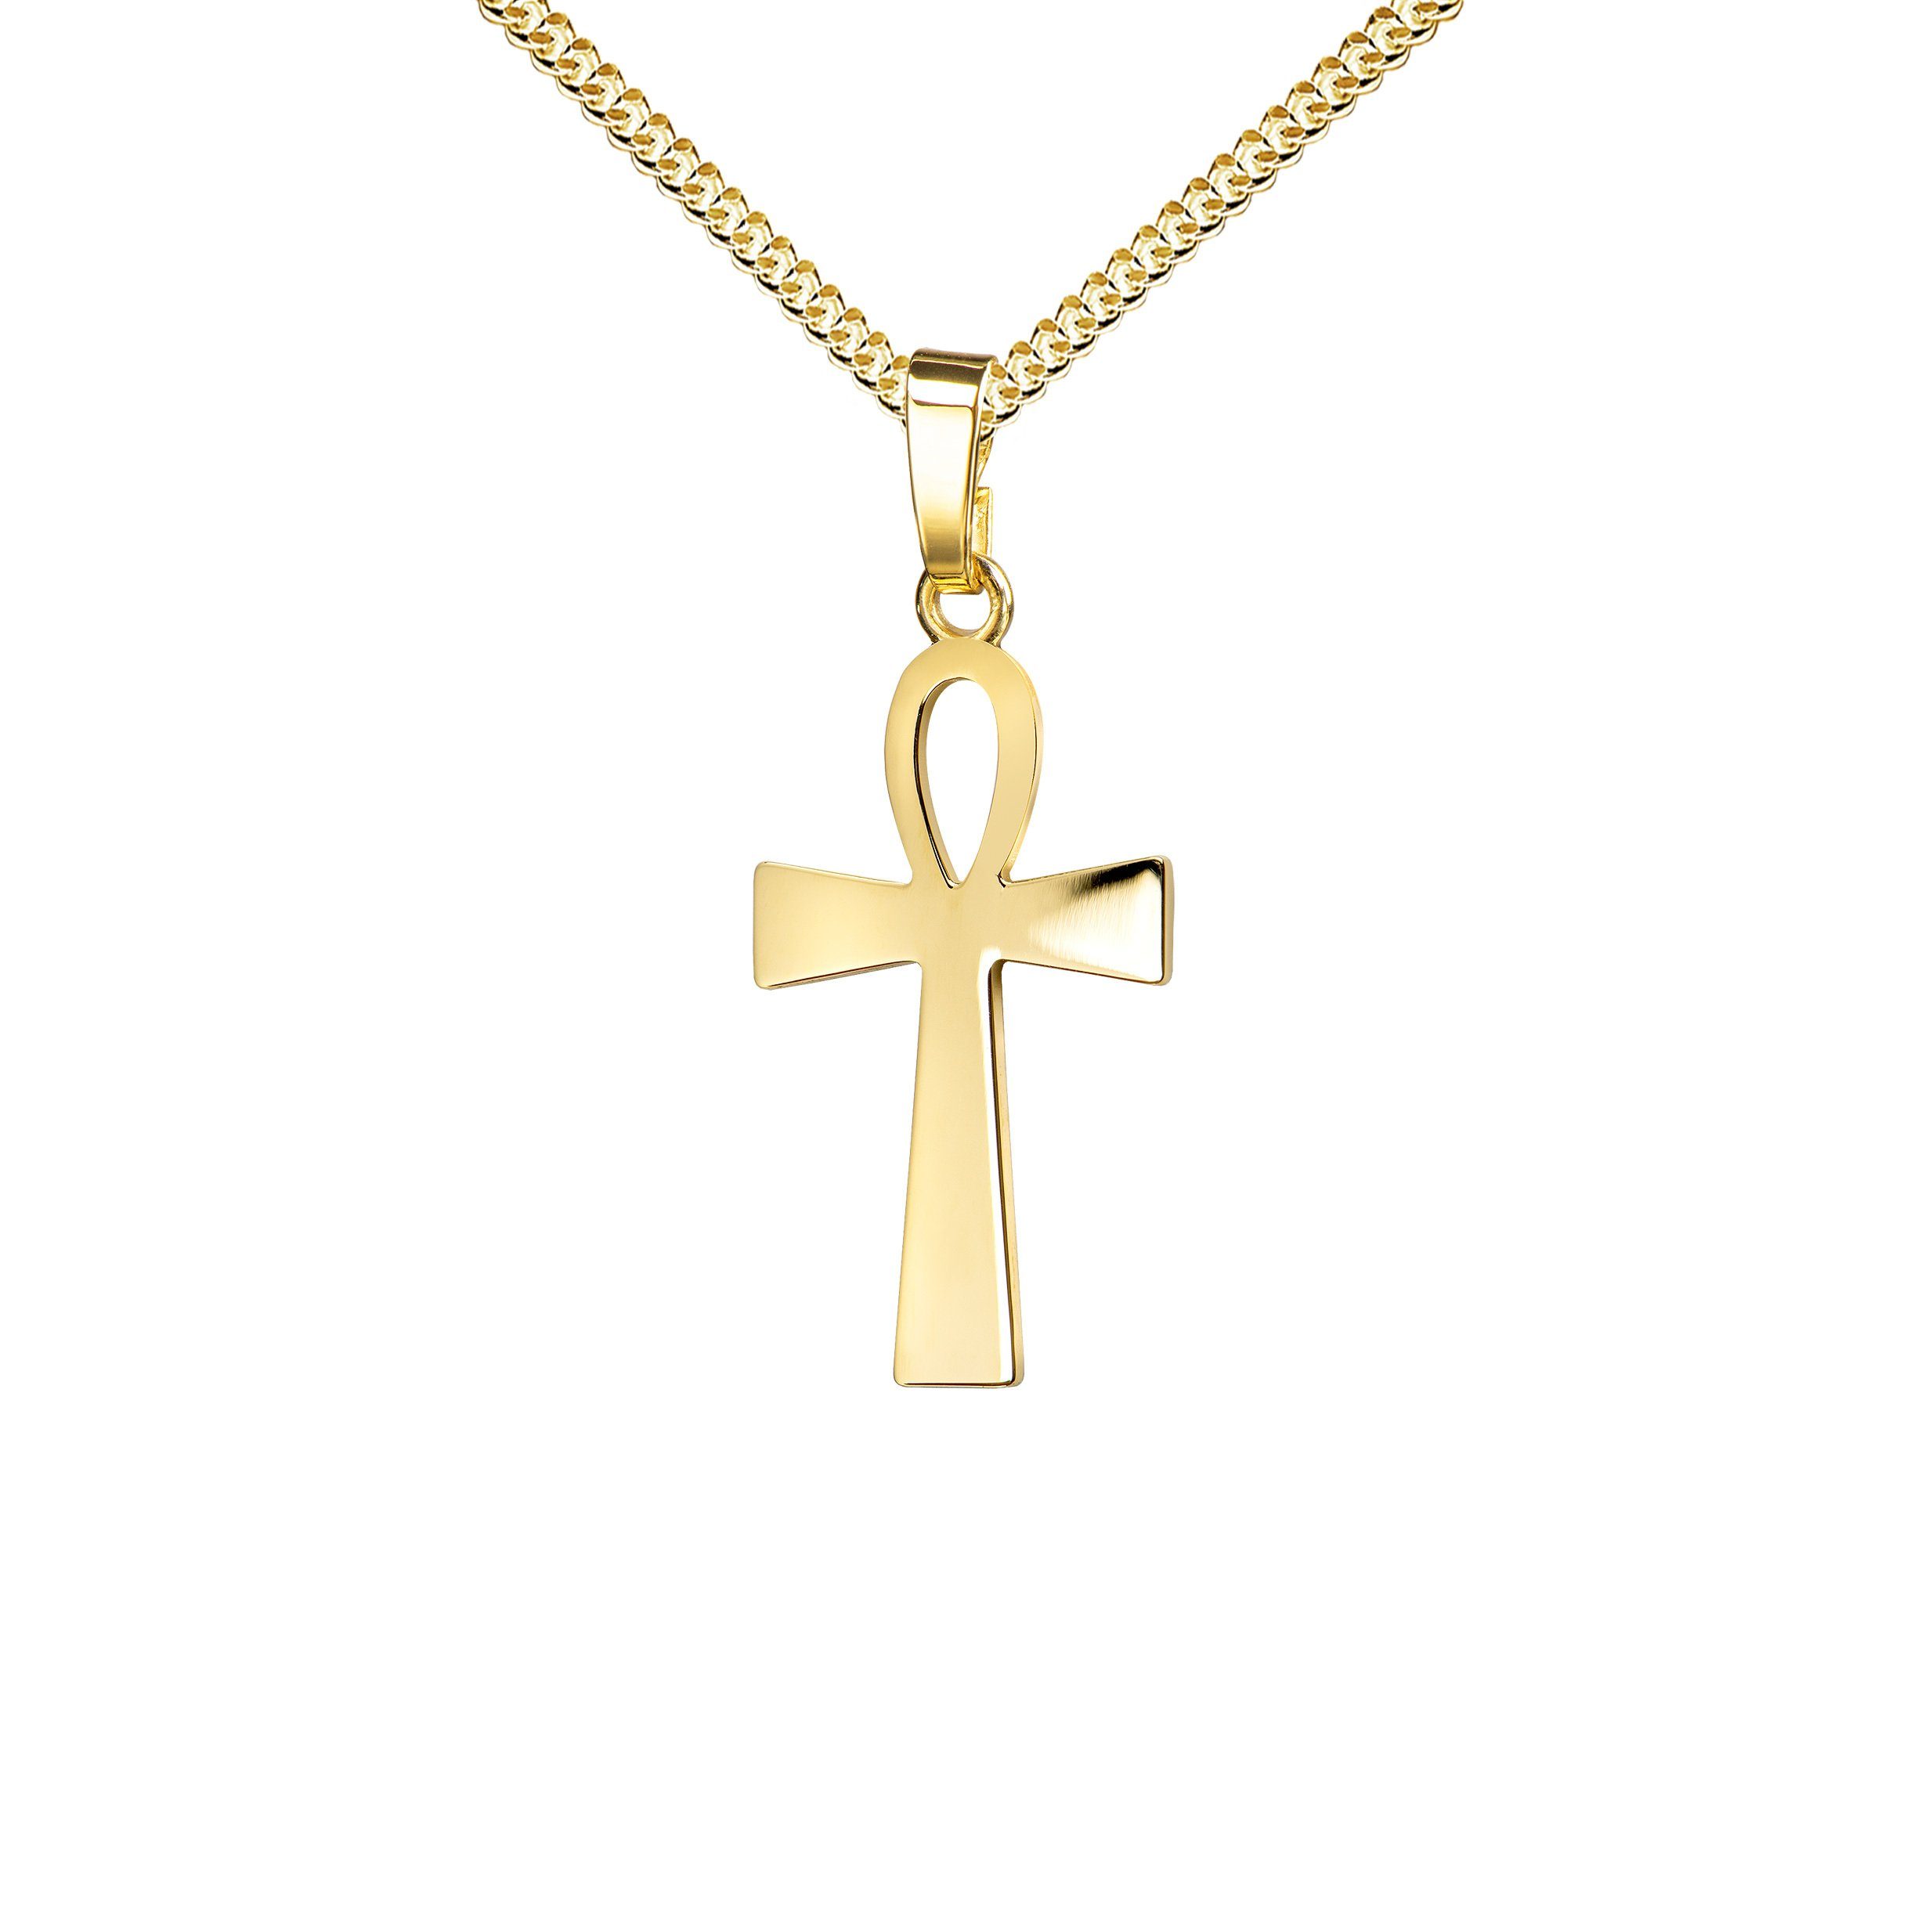 JEVELION Kreuzkette ägyptisches Kreuz 750 Goldkreuz - Made in Germany (Goldanhänger, für Damen und Herren), Mit Kette vergoldet- Länge wählbar 36 - 70 cm oder ohne Kette.